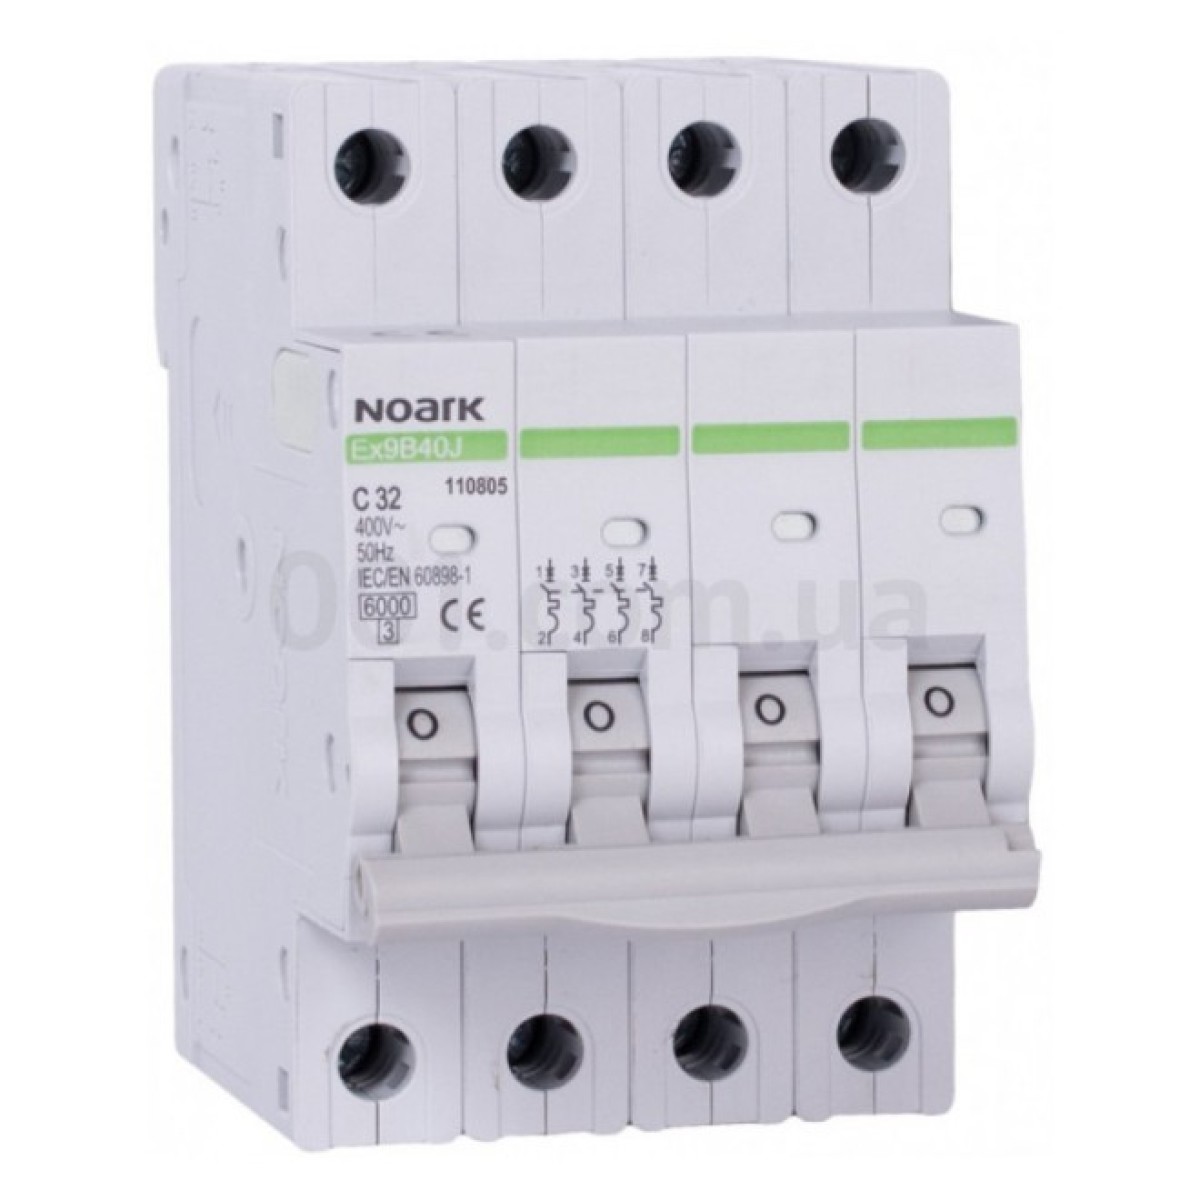 Модульний автоматичний вимикач Ex9B40J 6kA хар-ка C 6A 40,5мм 4P, NOARK 256_256.jpg